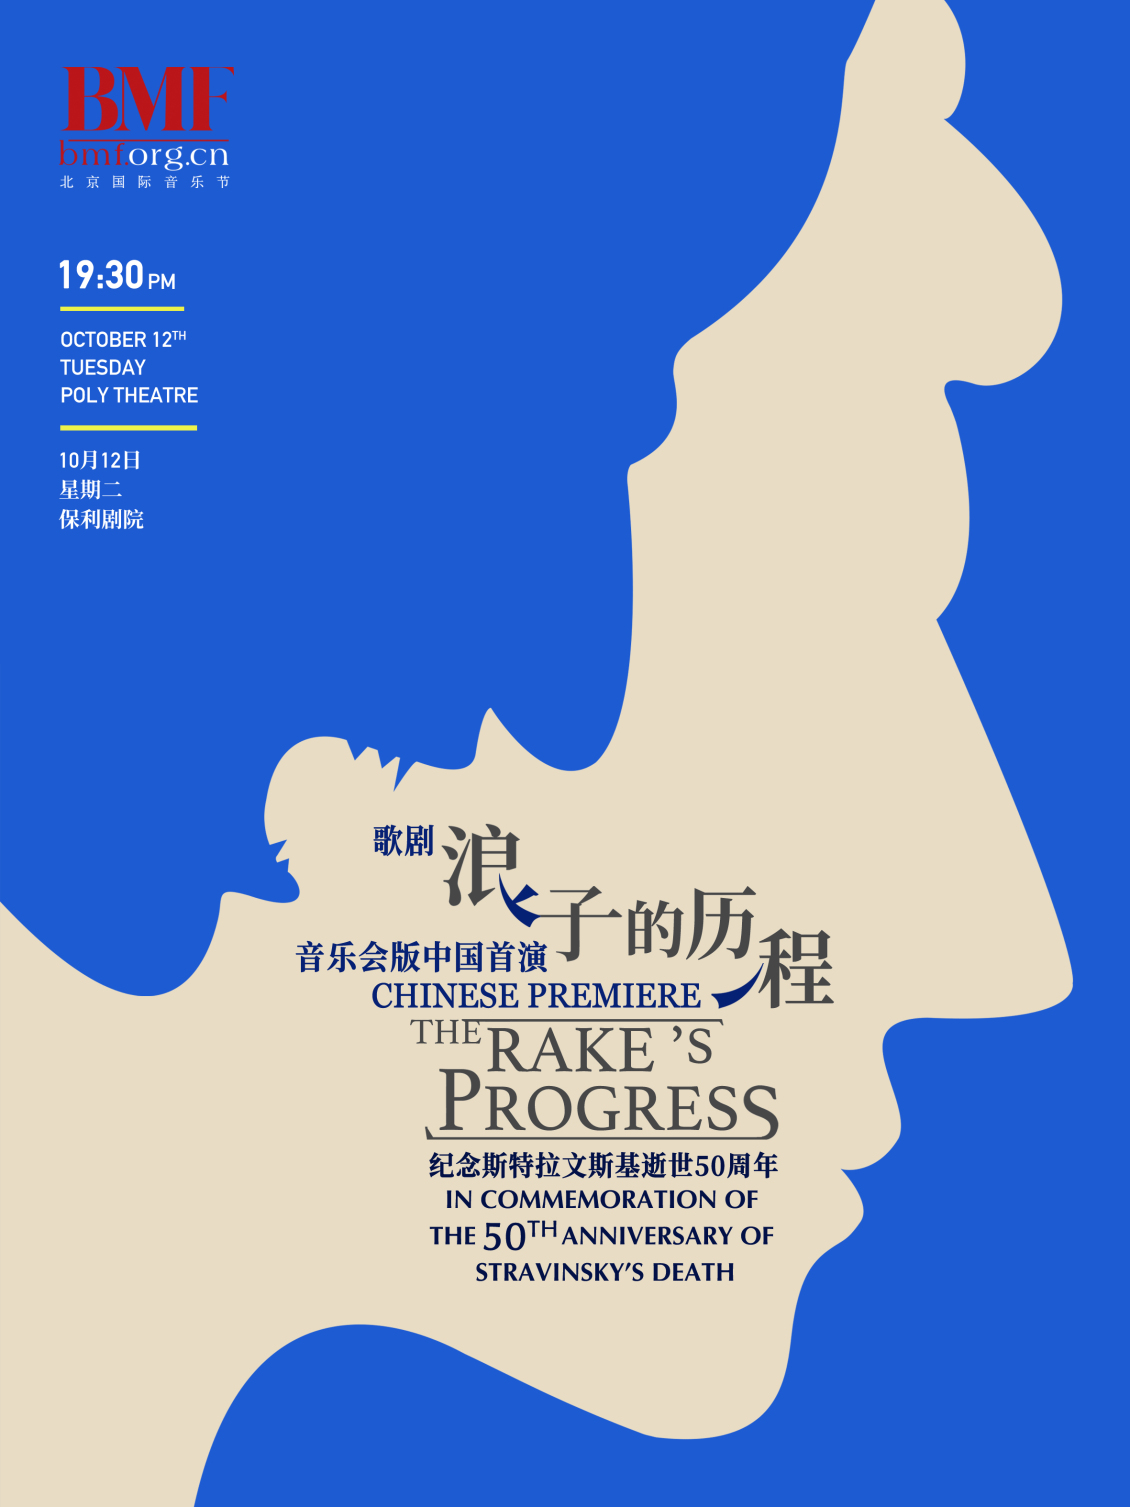 淘宝美工小李爱设计北京国际音乐节音乐会海报作品